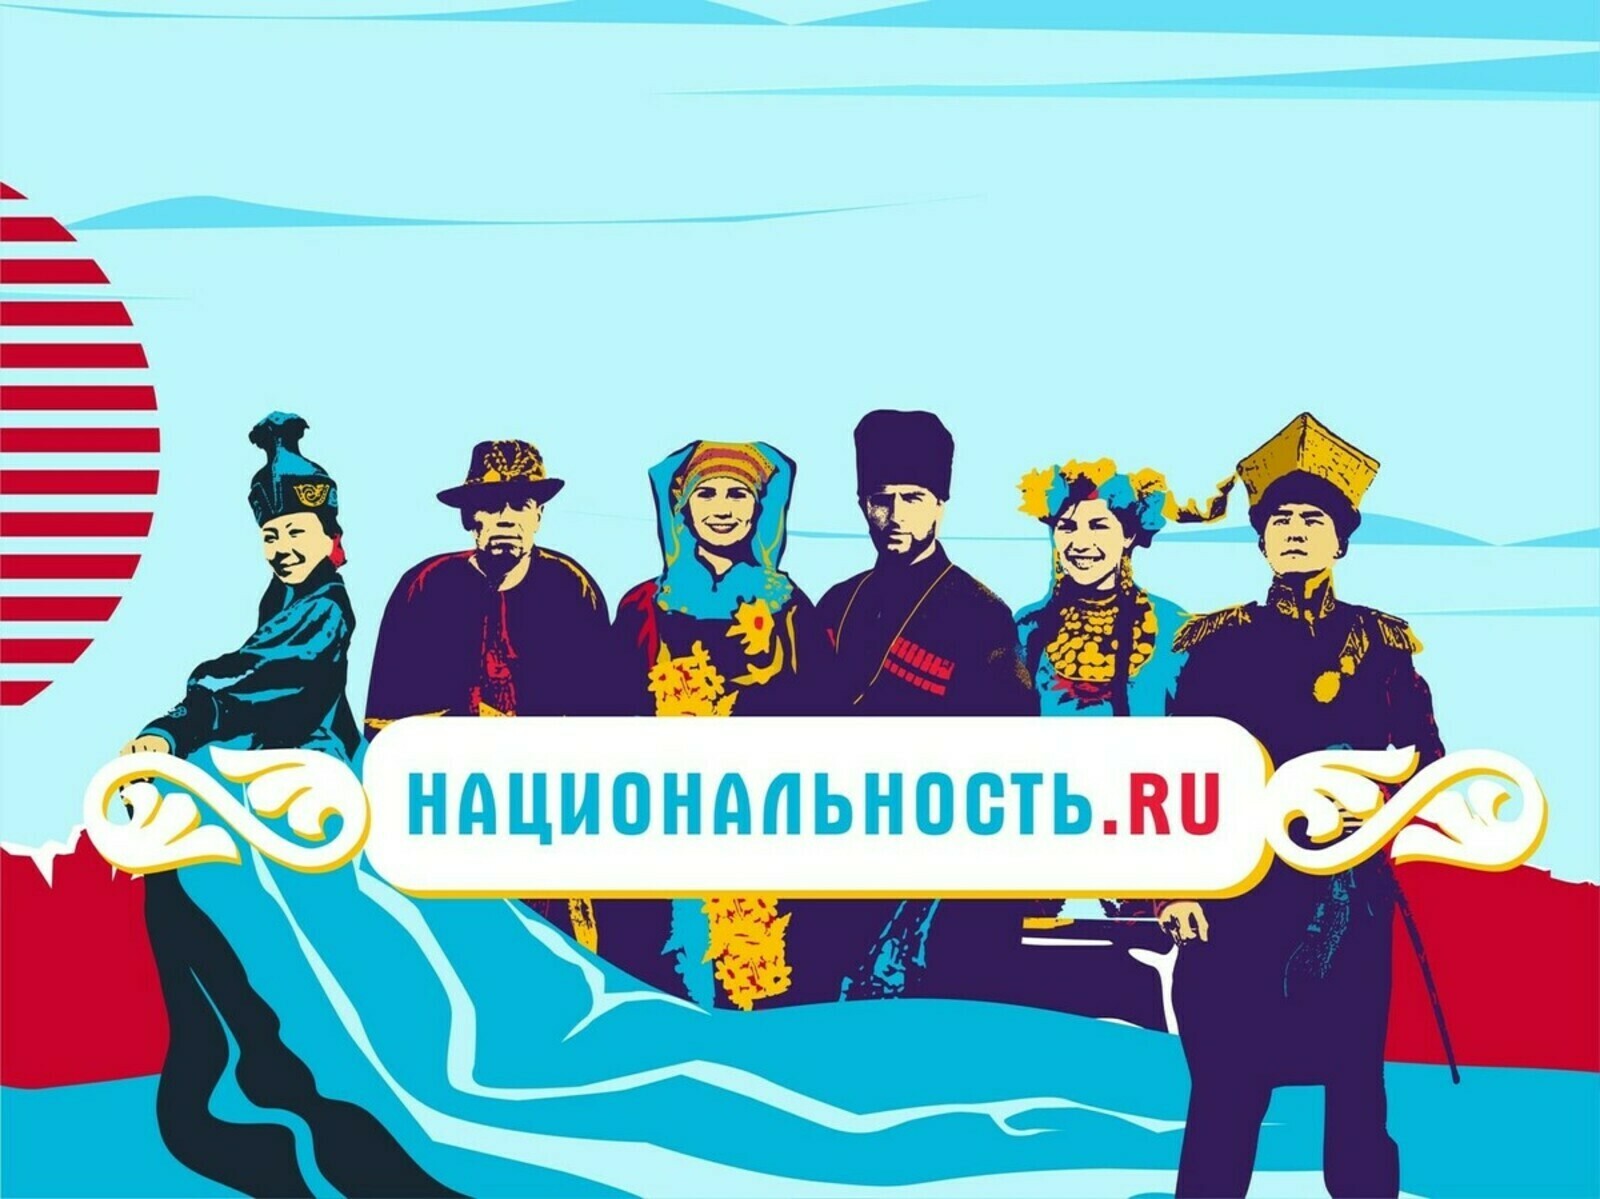 Проект "Национальность.ru" о коренном народе Дагестана - АЗЕРБАЙДЖАНЦЫ